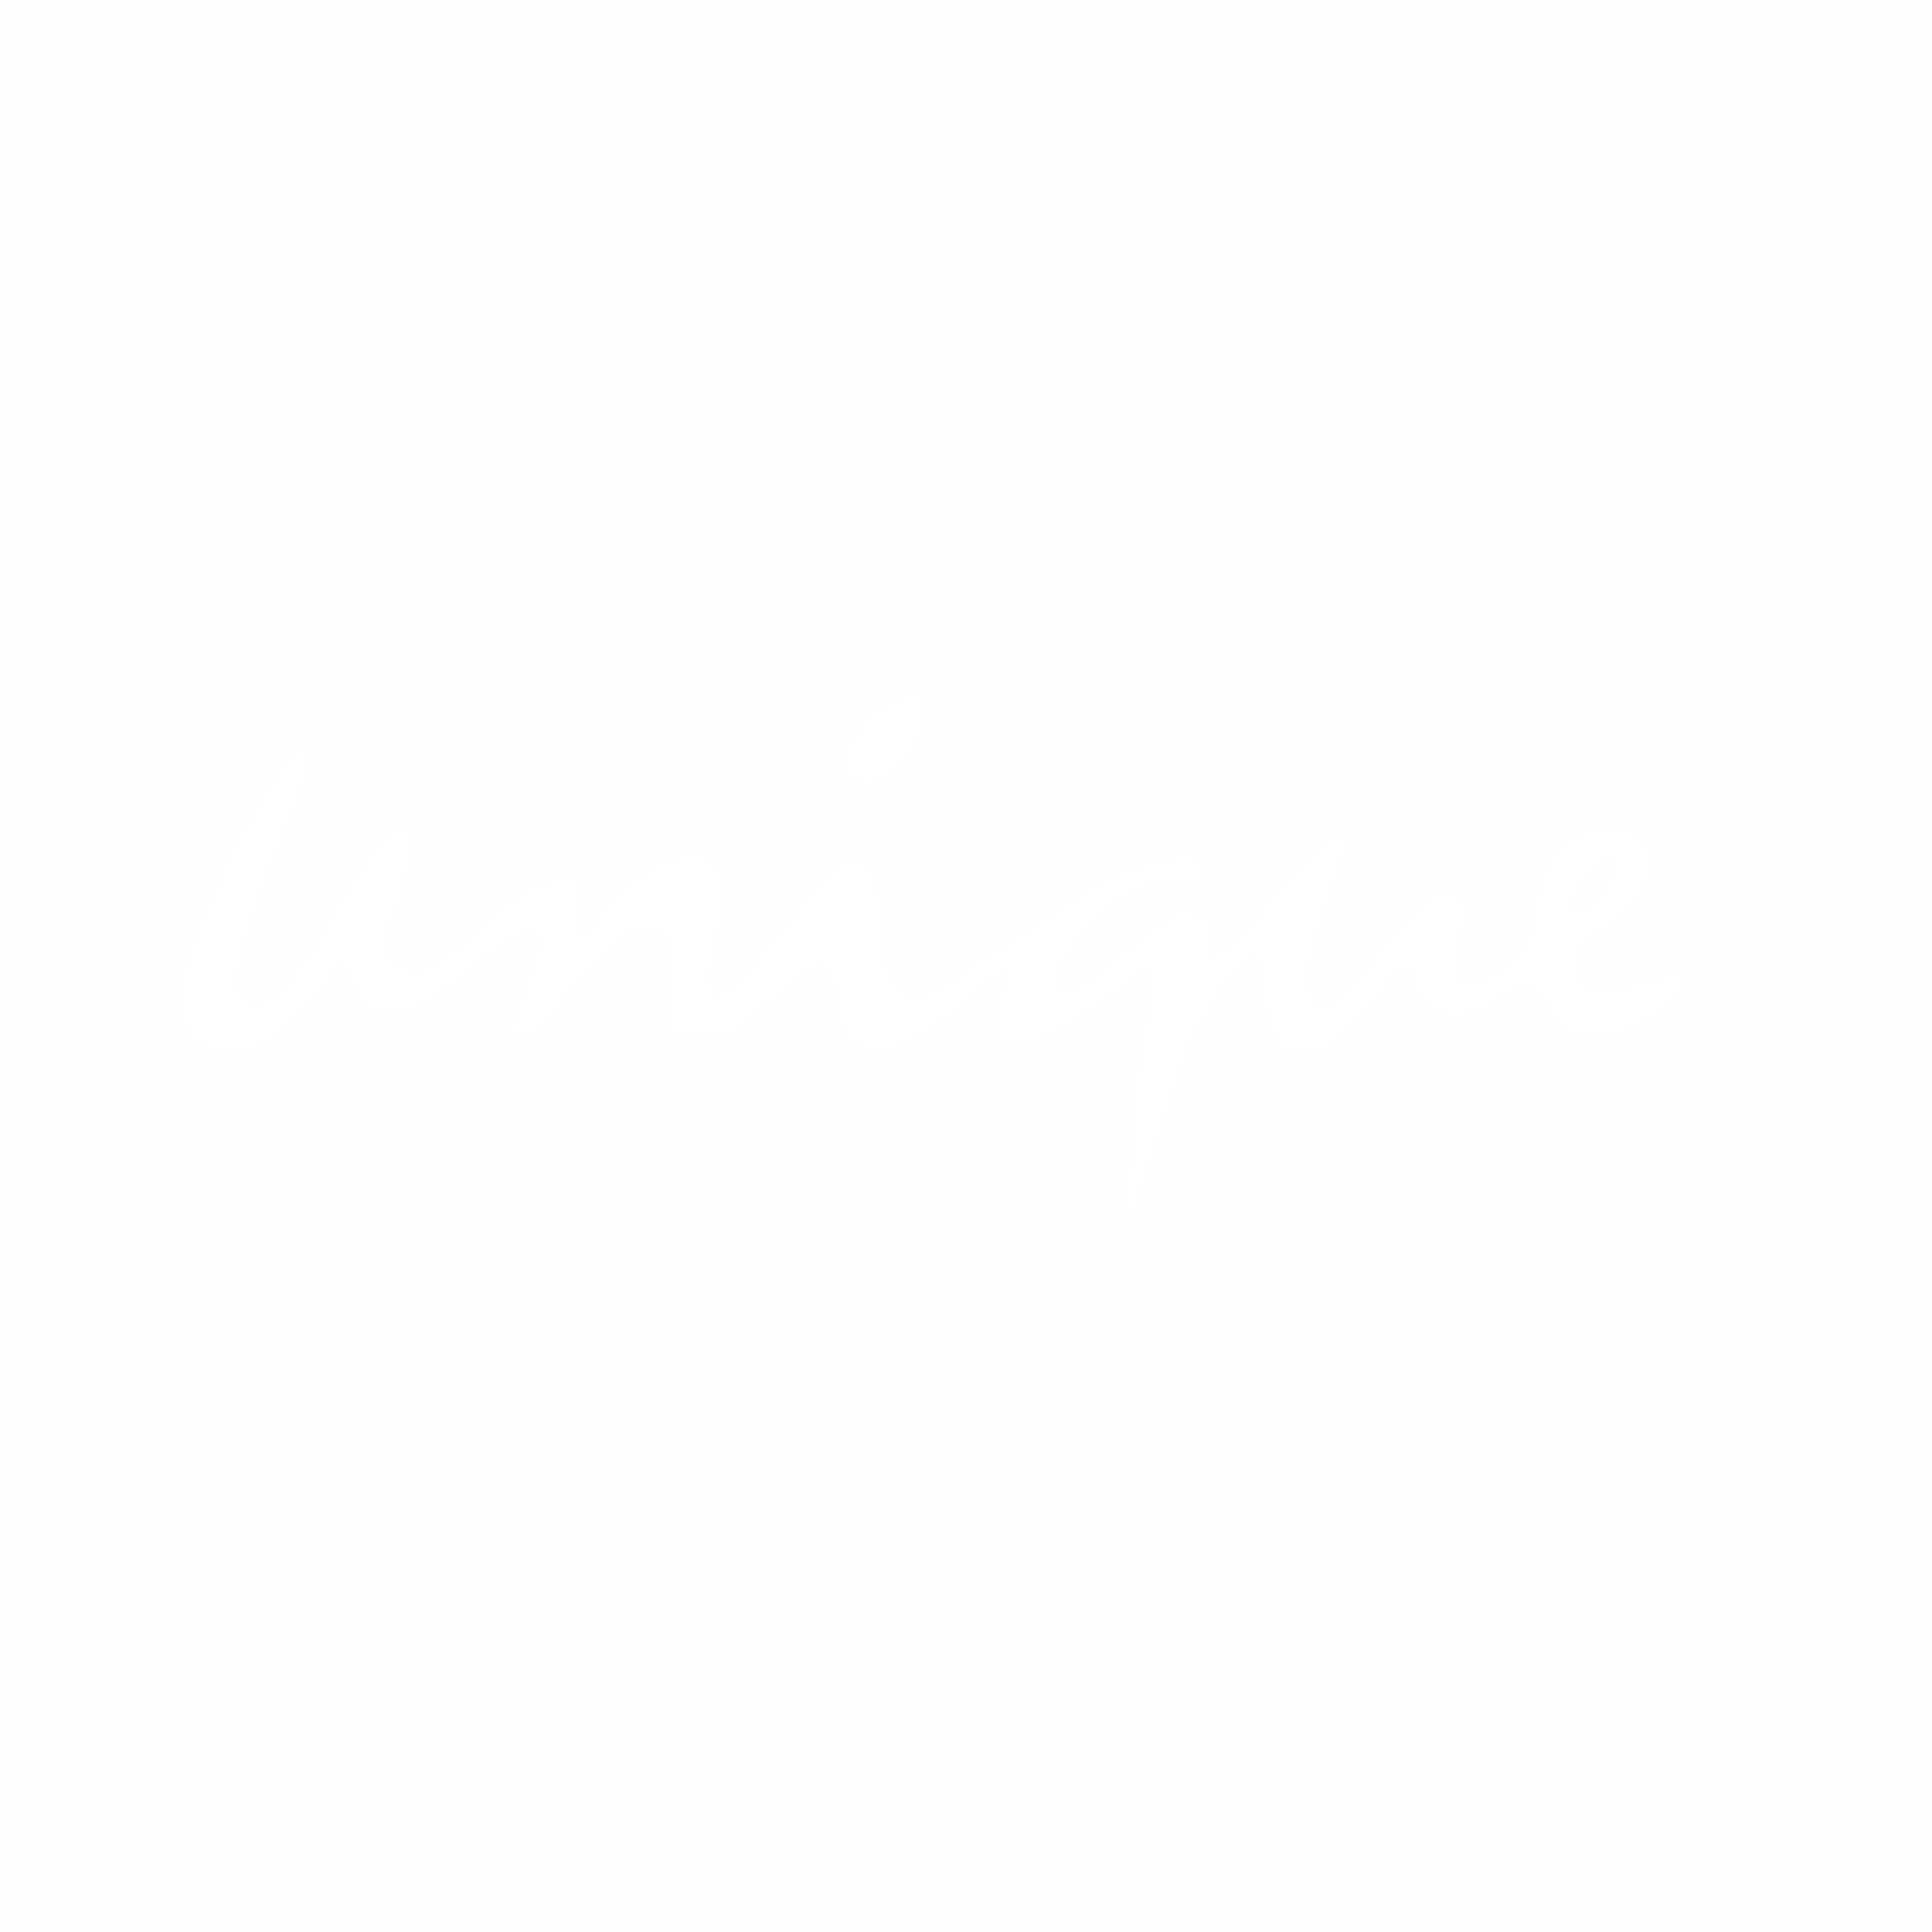 Unique21 Logo